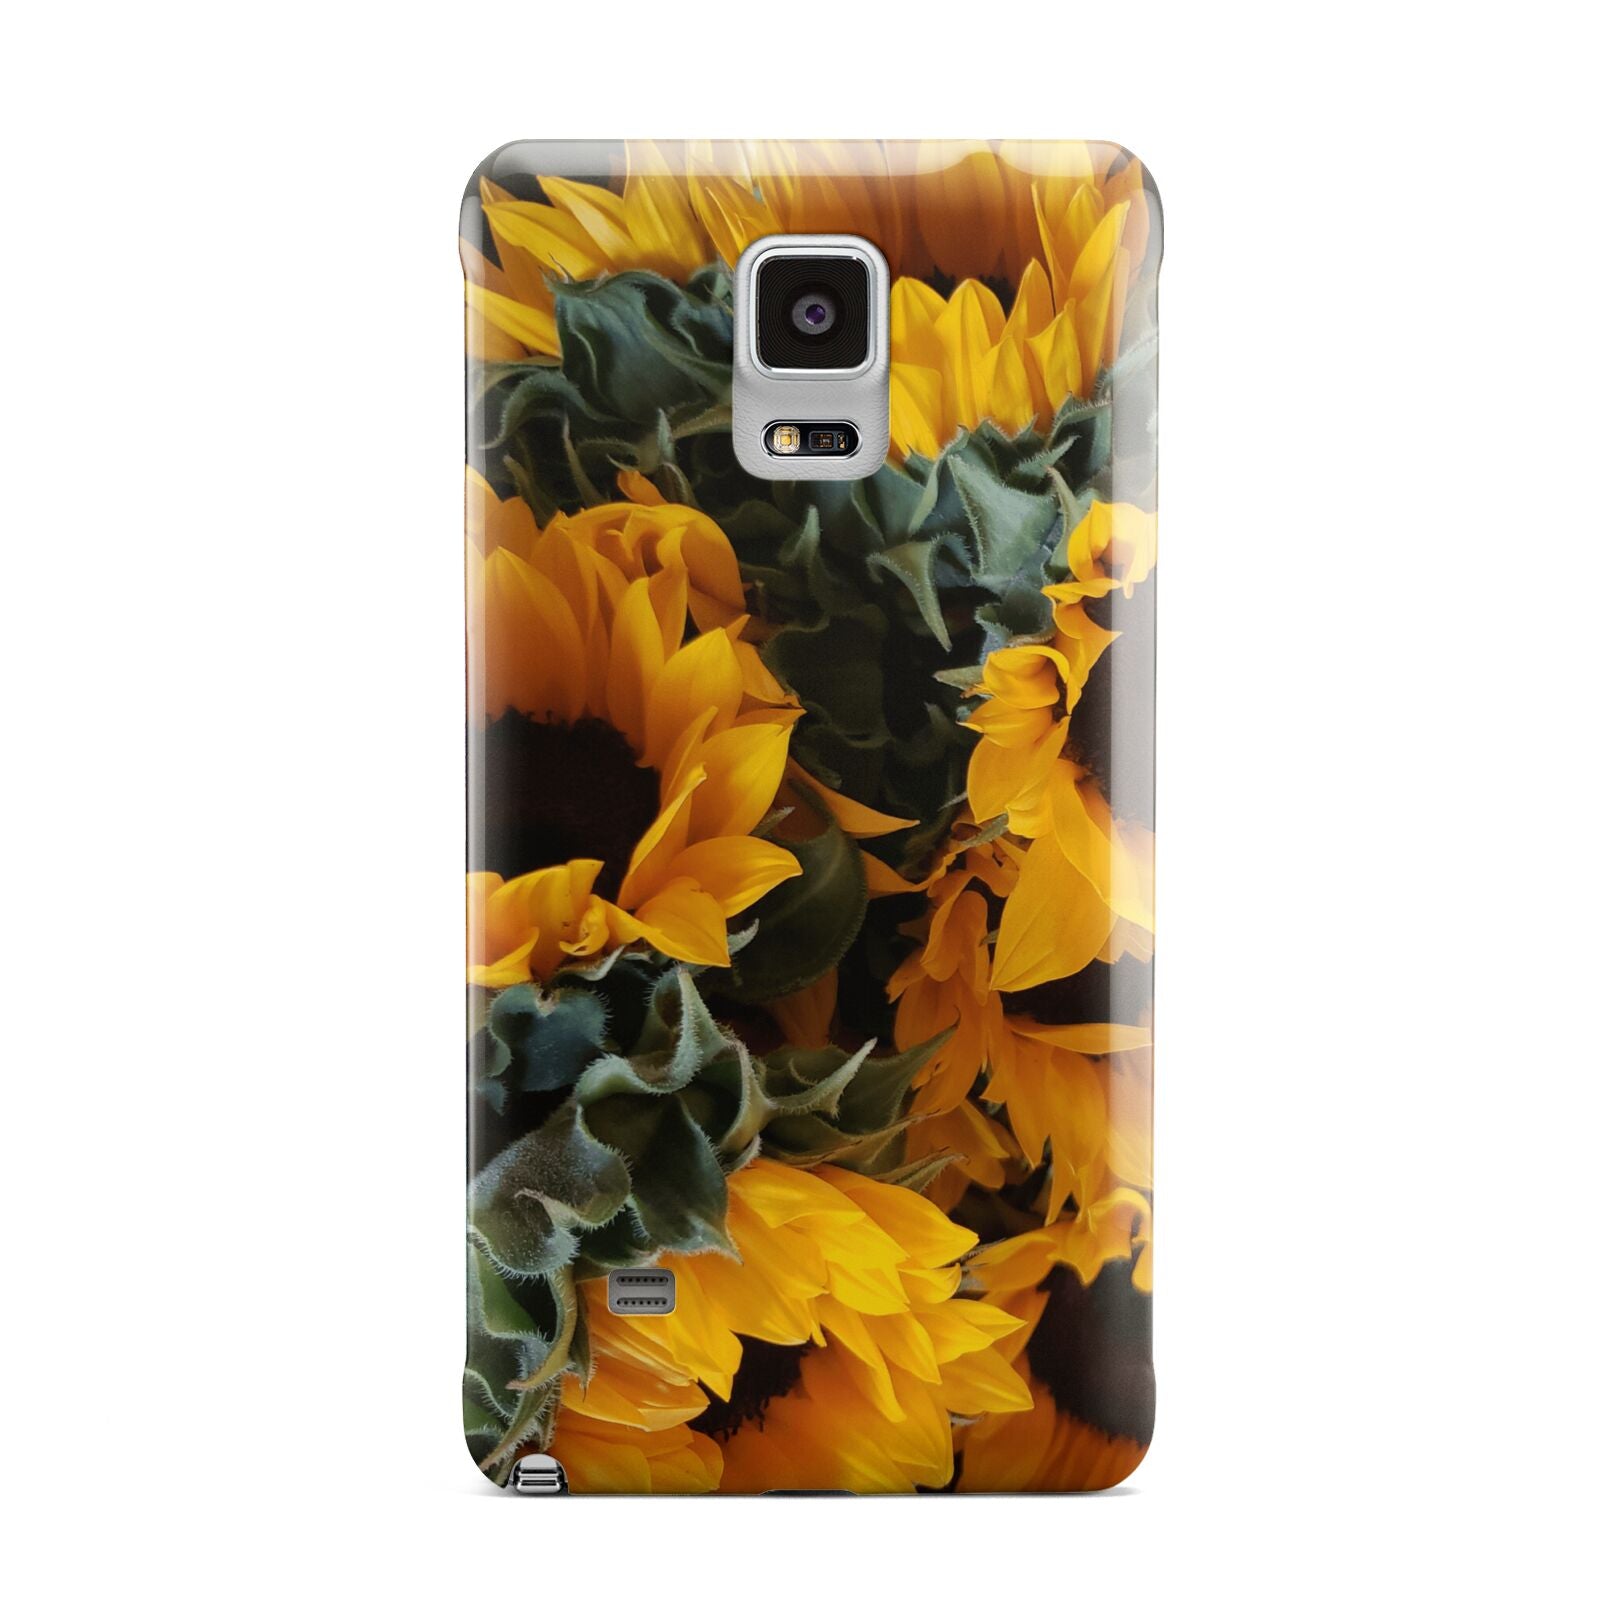 Sunflower Samsung Galaxy Note 4 Case